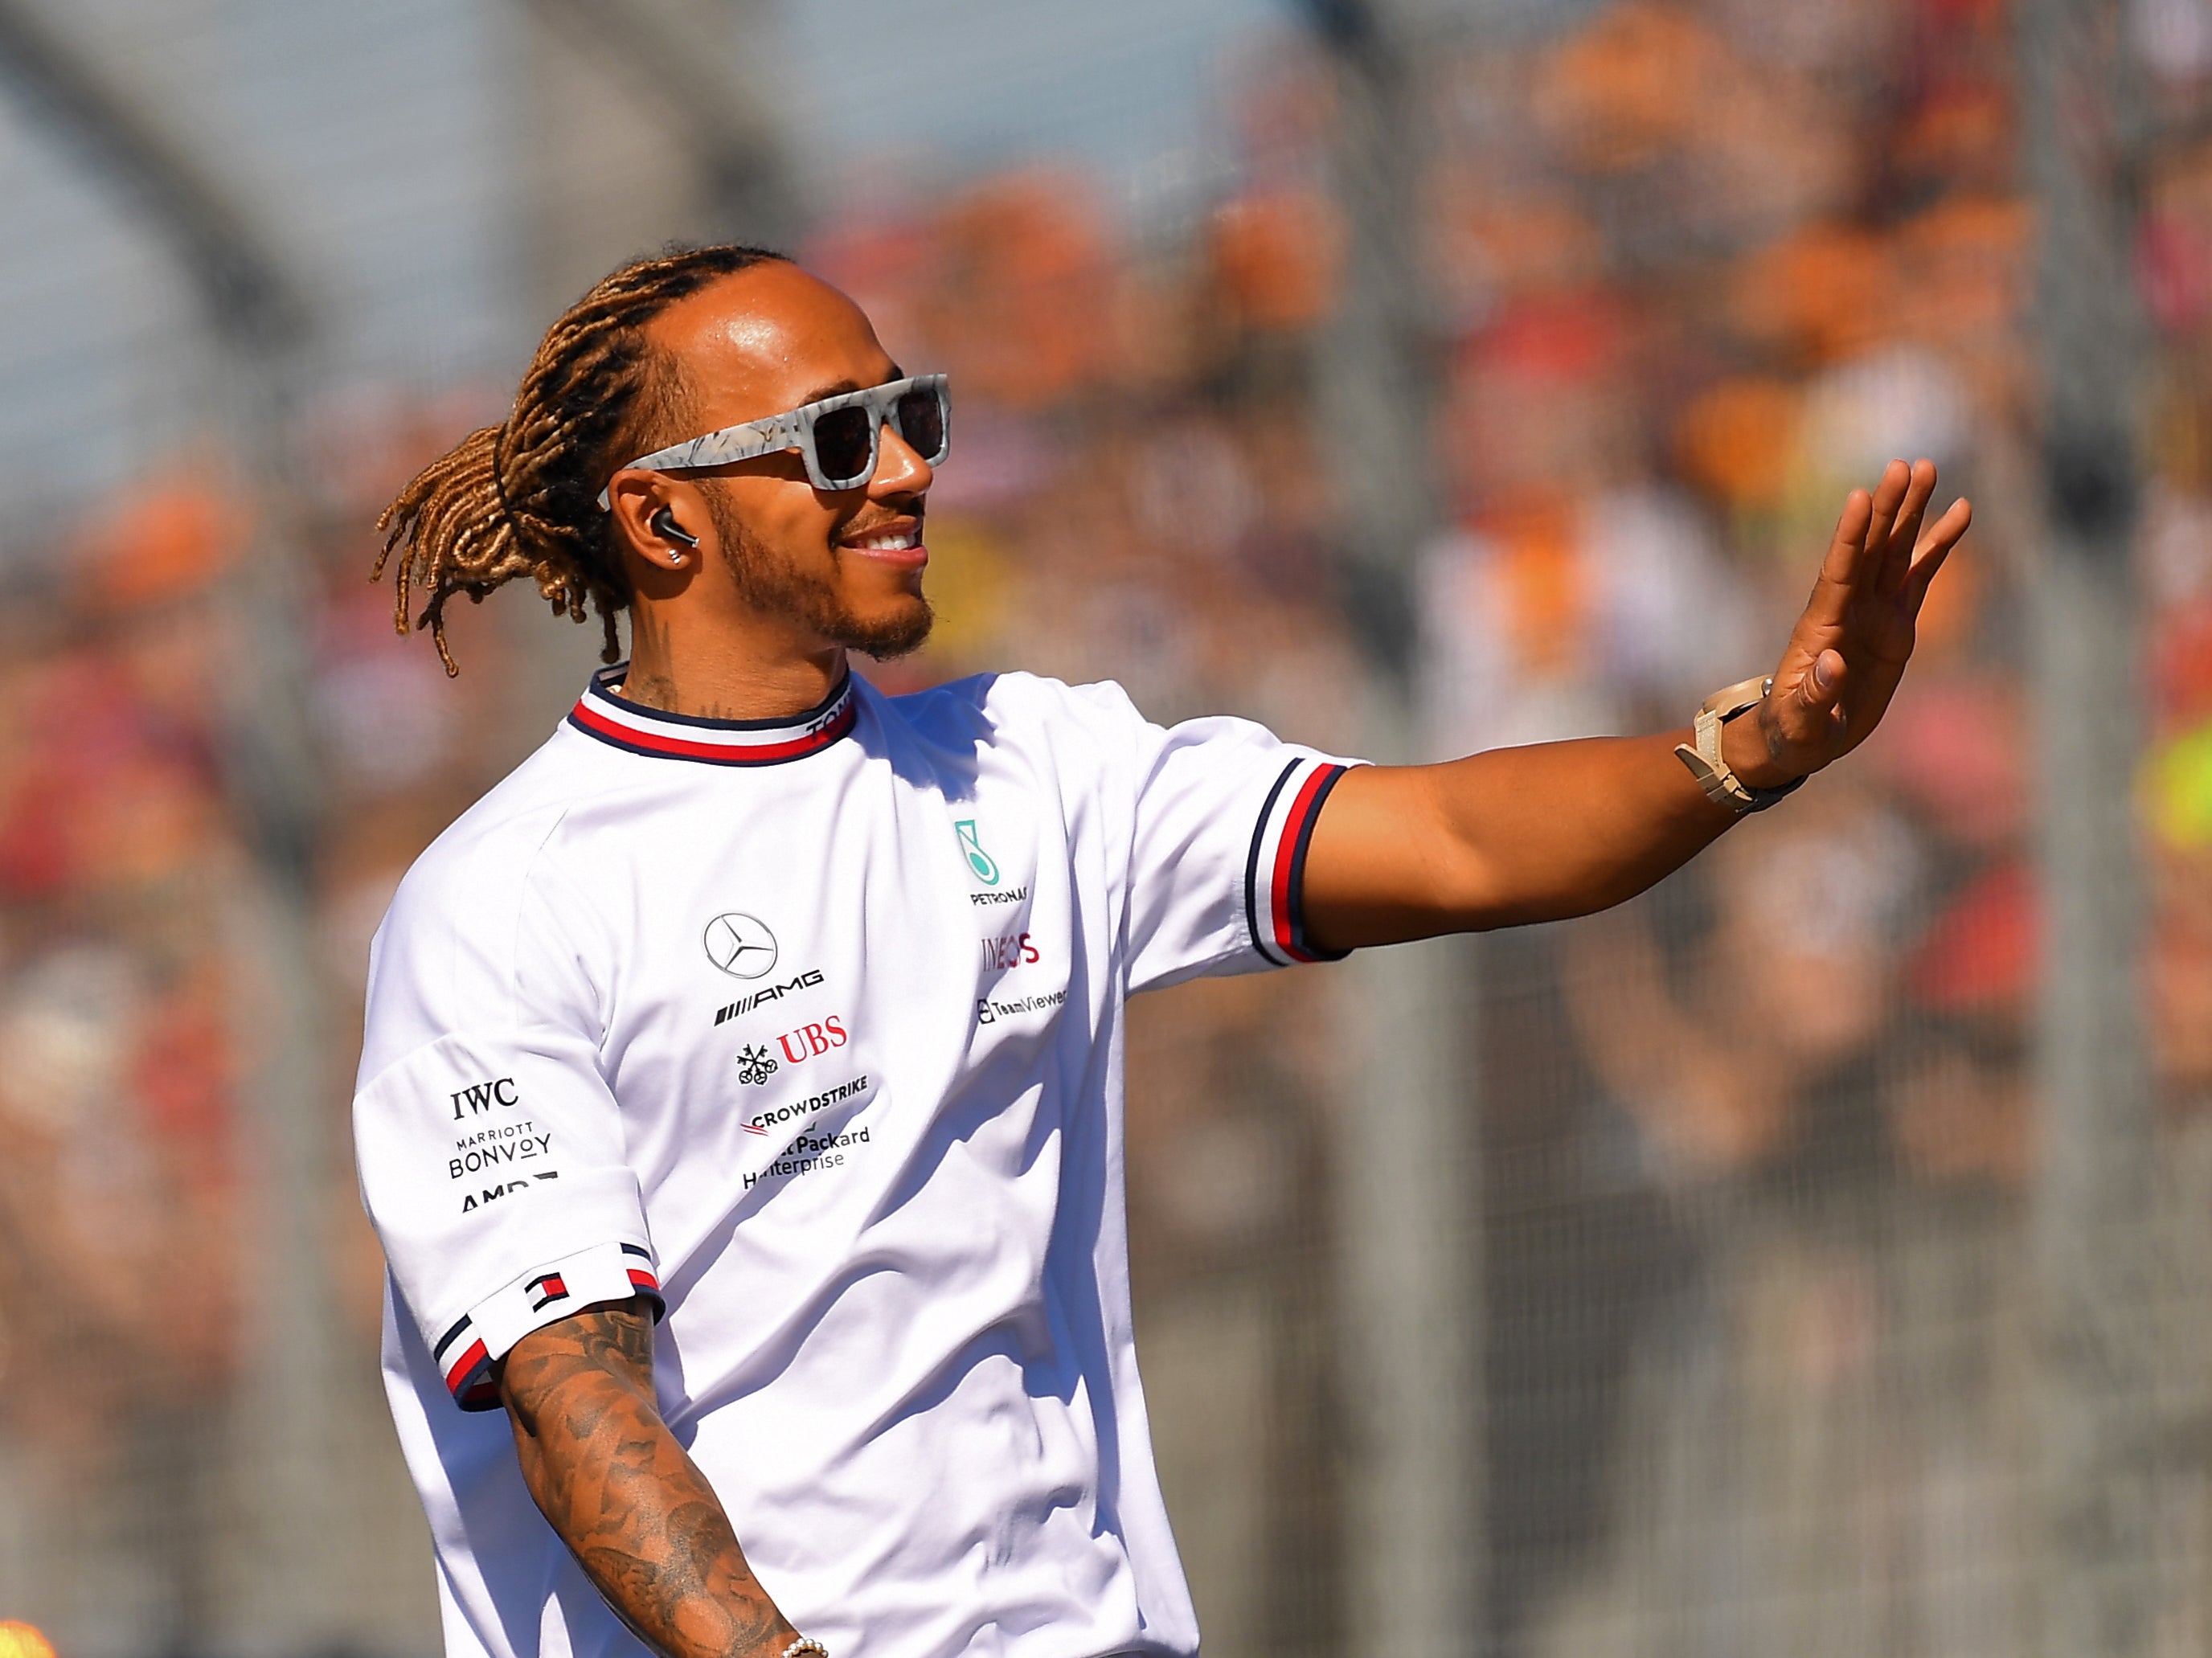 Hamilton defied the FIA’s clampdown in Australia